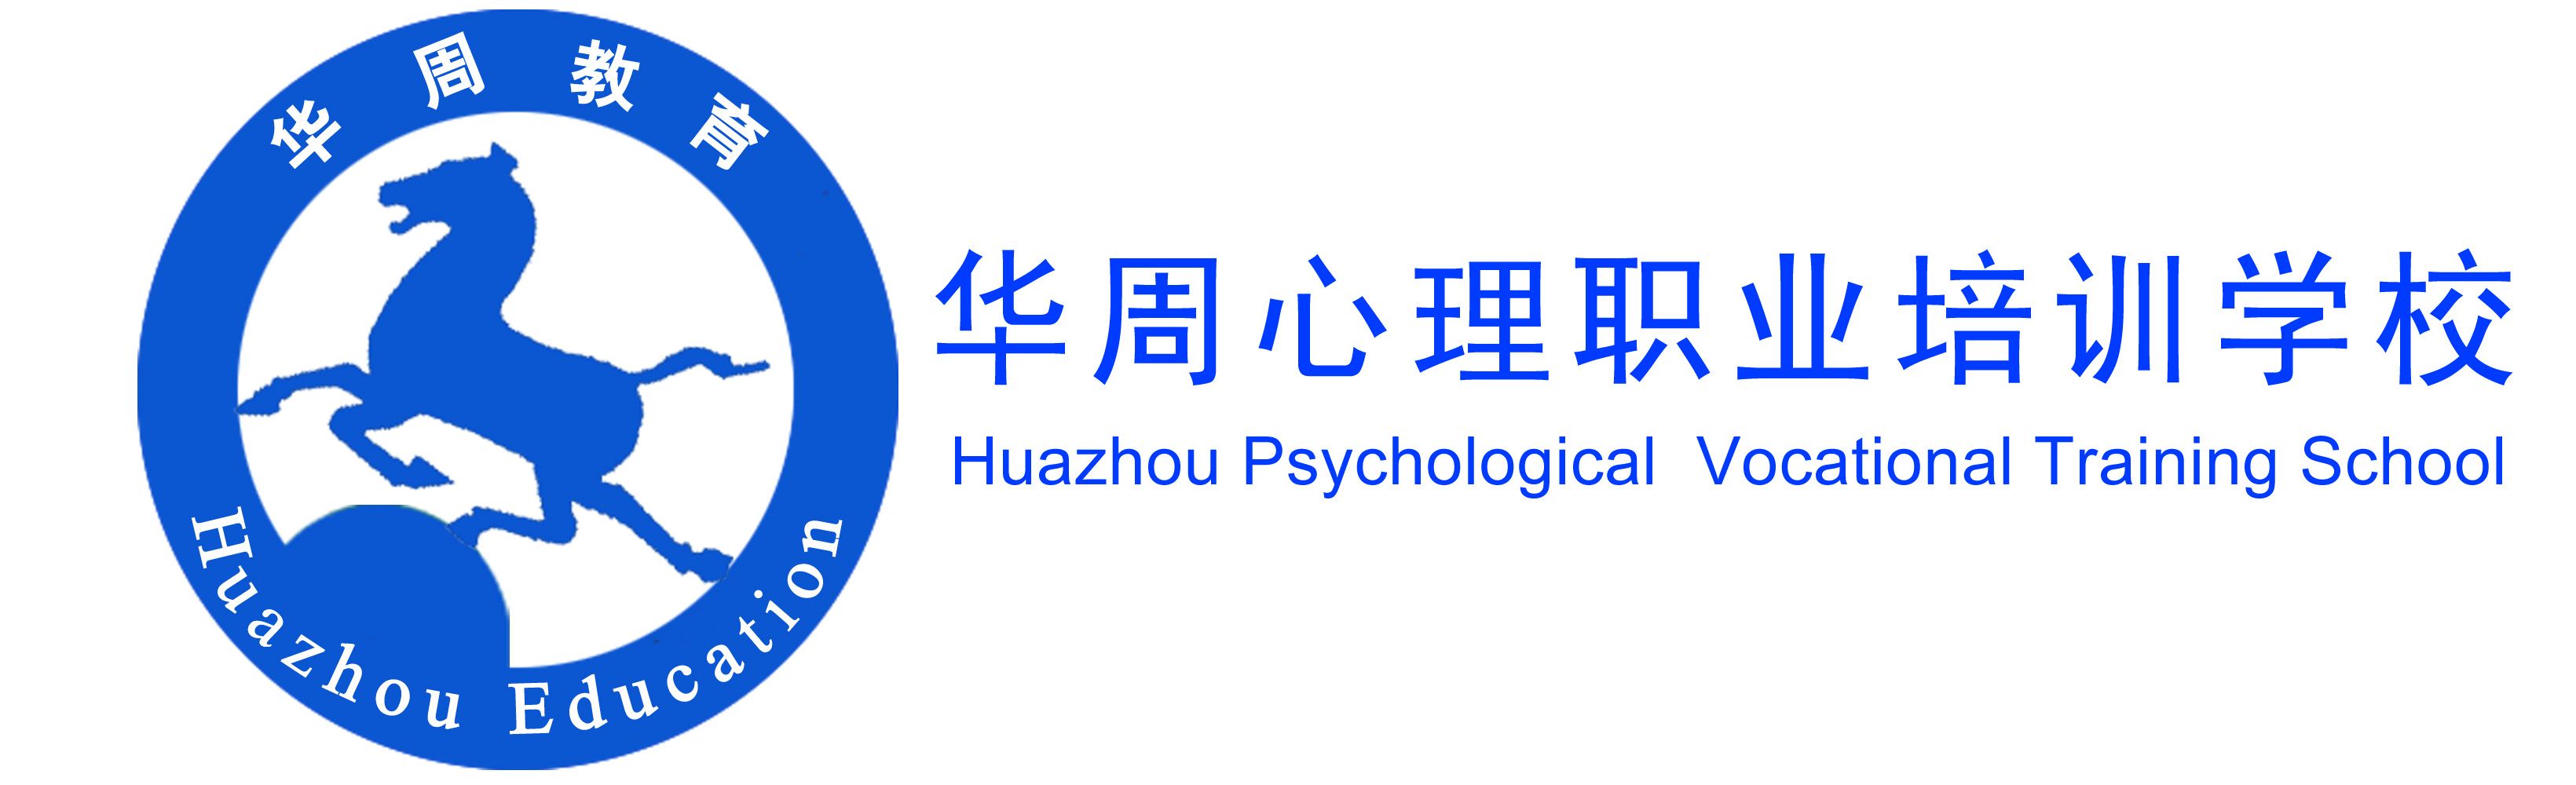 華周心理職業培訓學校Logo